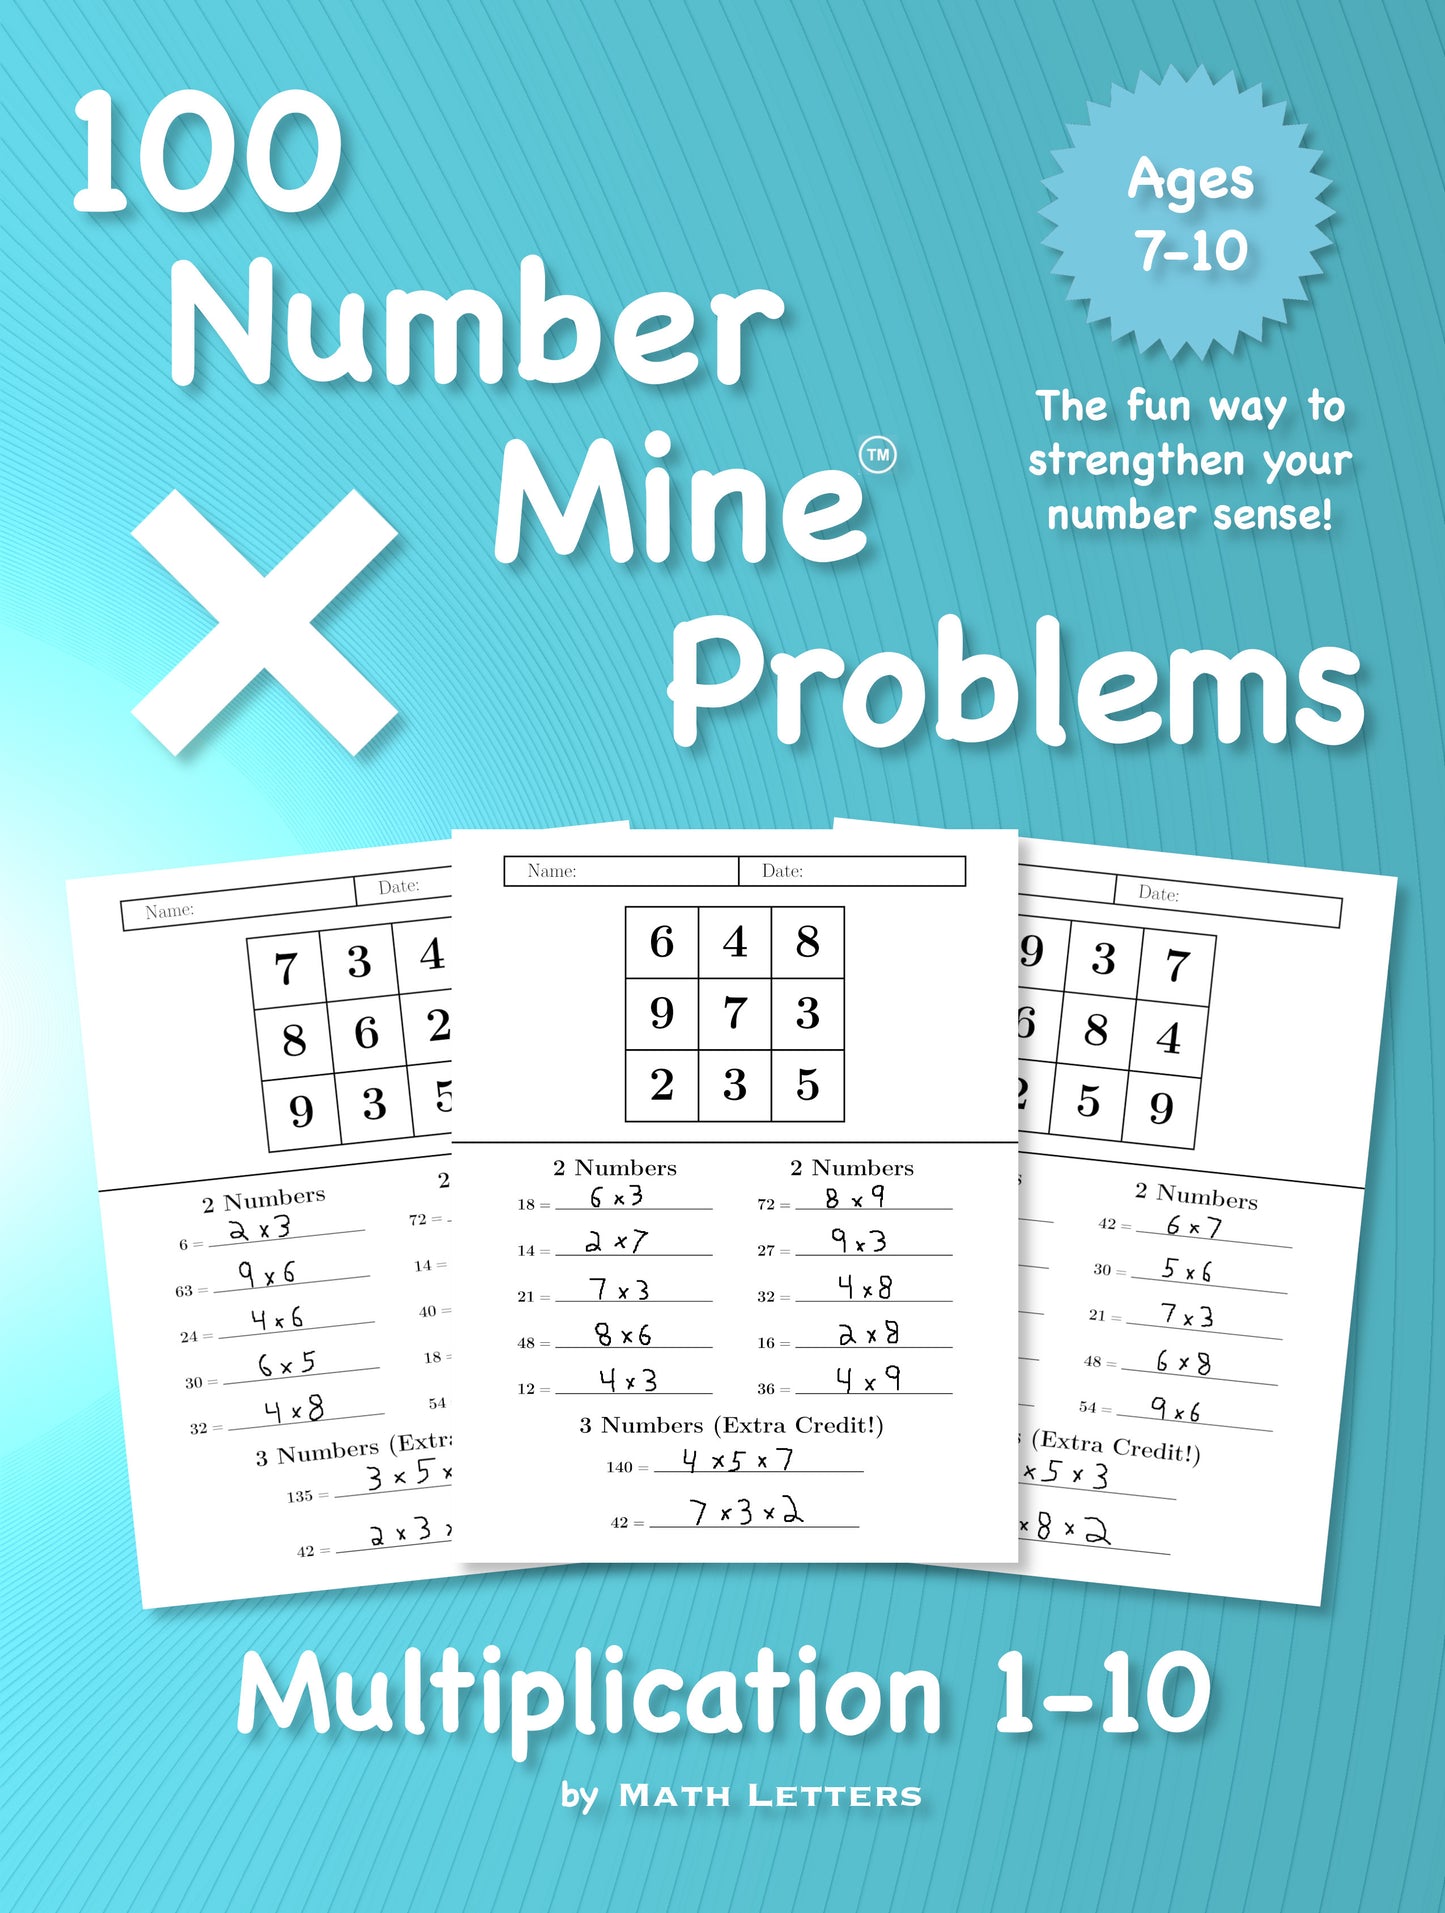 100 Number Mine Problems Multiplication 1-10 (digital PDF download)